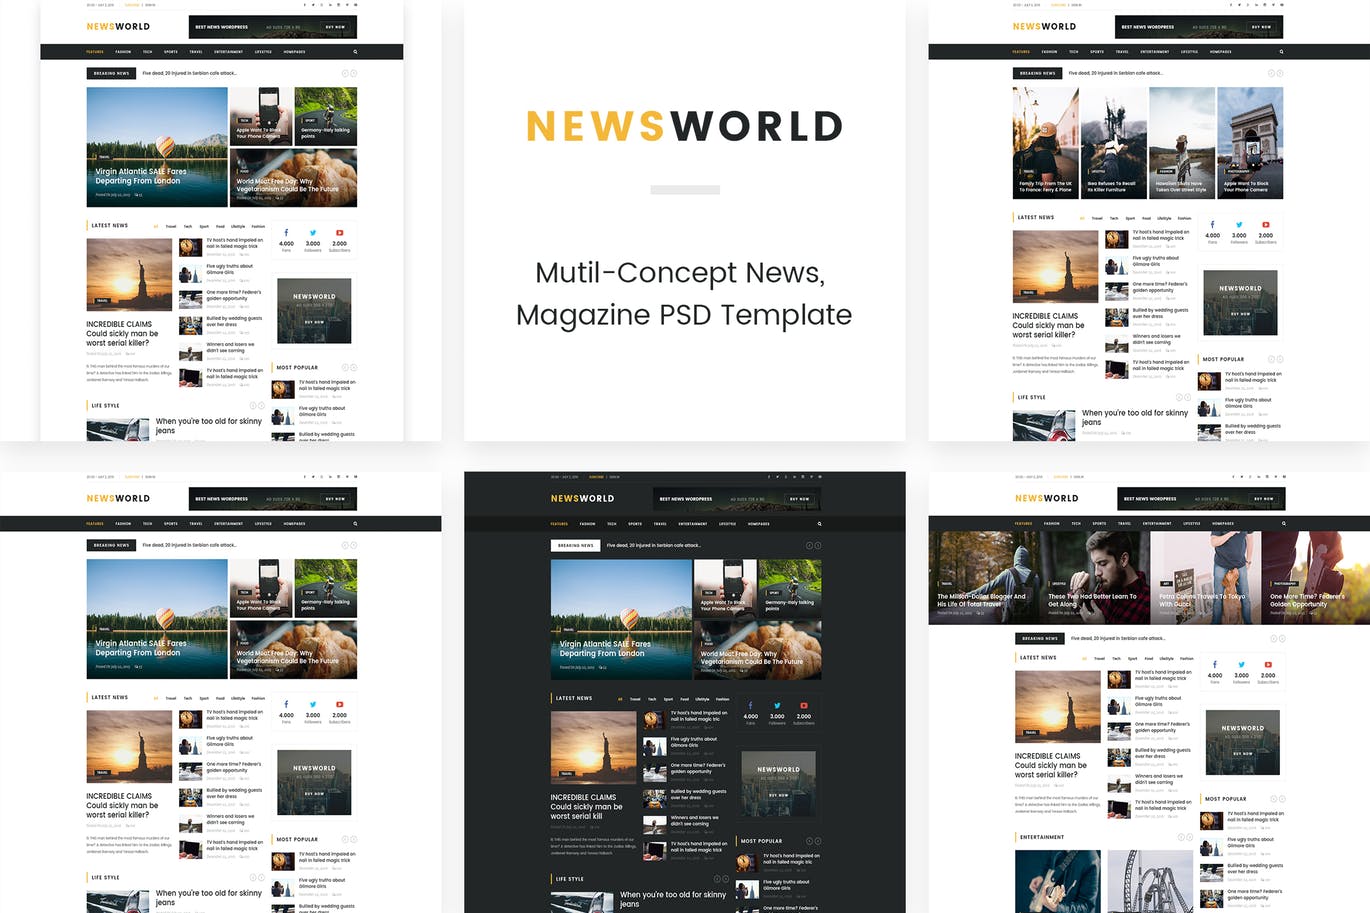 新闻资讯杂志类网站设计HTML模板素材库精选 Newsworld | Mutil-Concept Magazine HTML5 Template插图